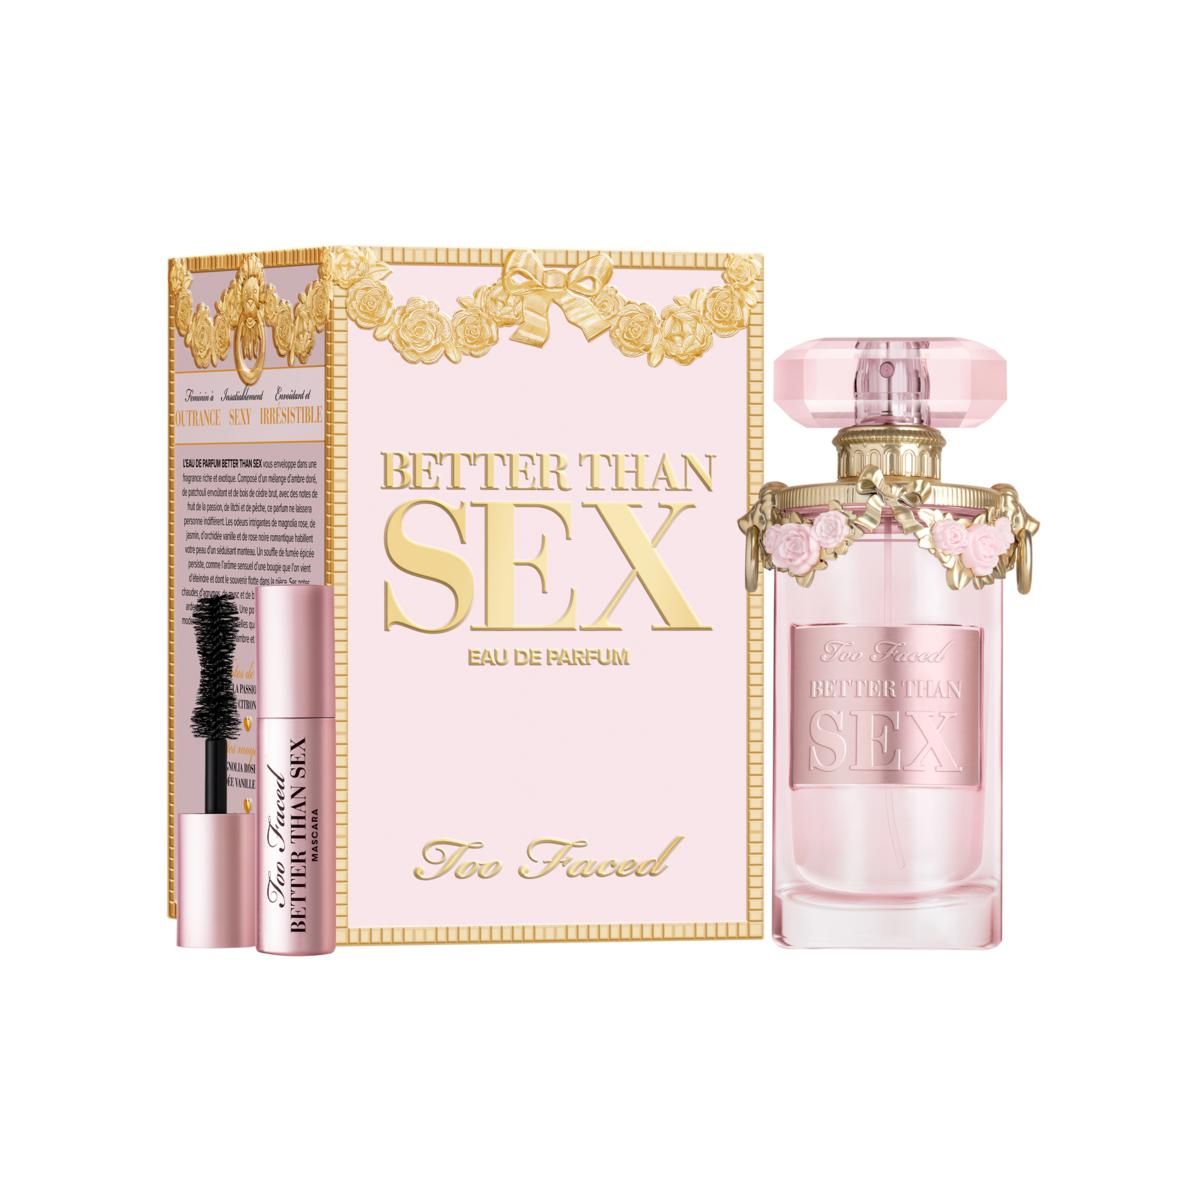 Too Faced Better Than Sex Eau De Parfum - 20321009 | HSN | HSN